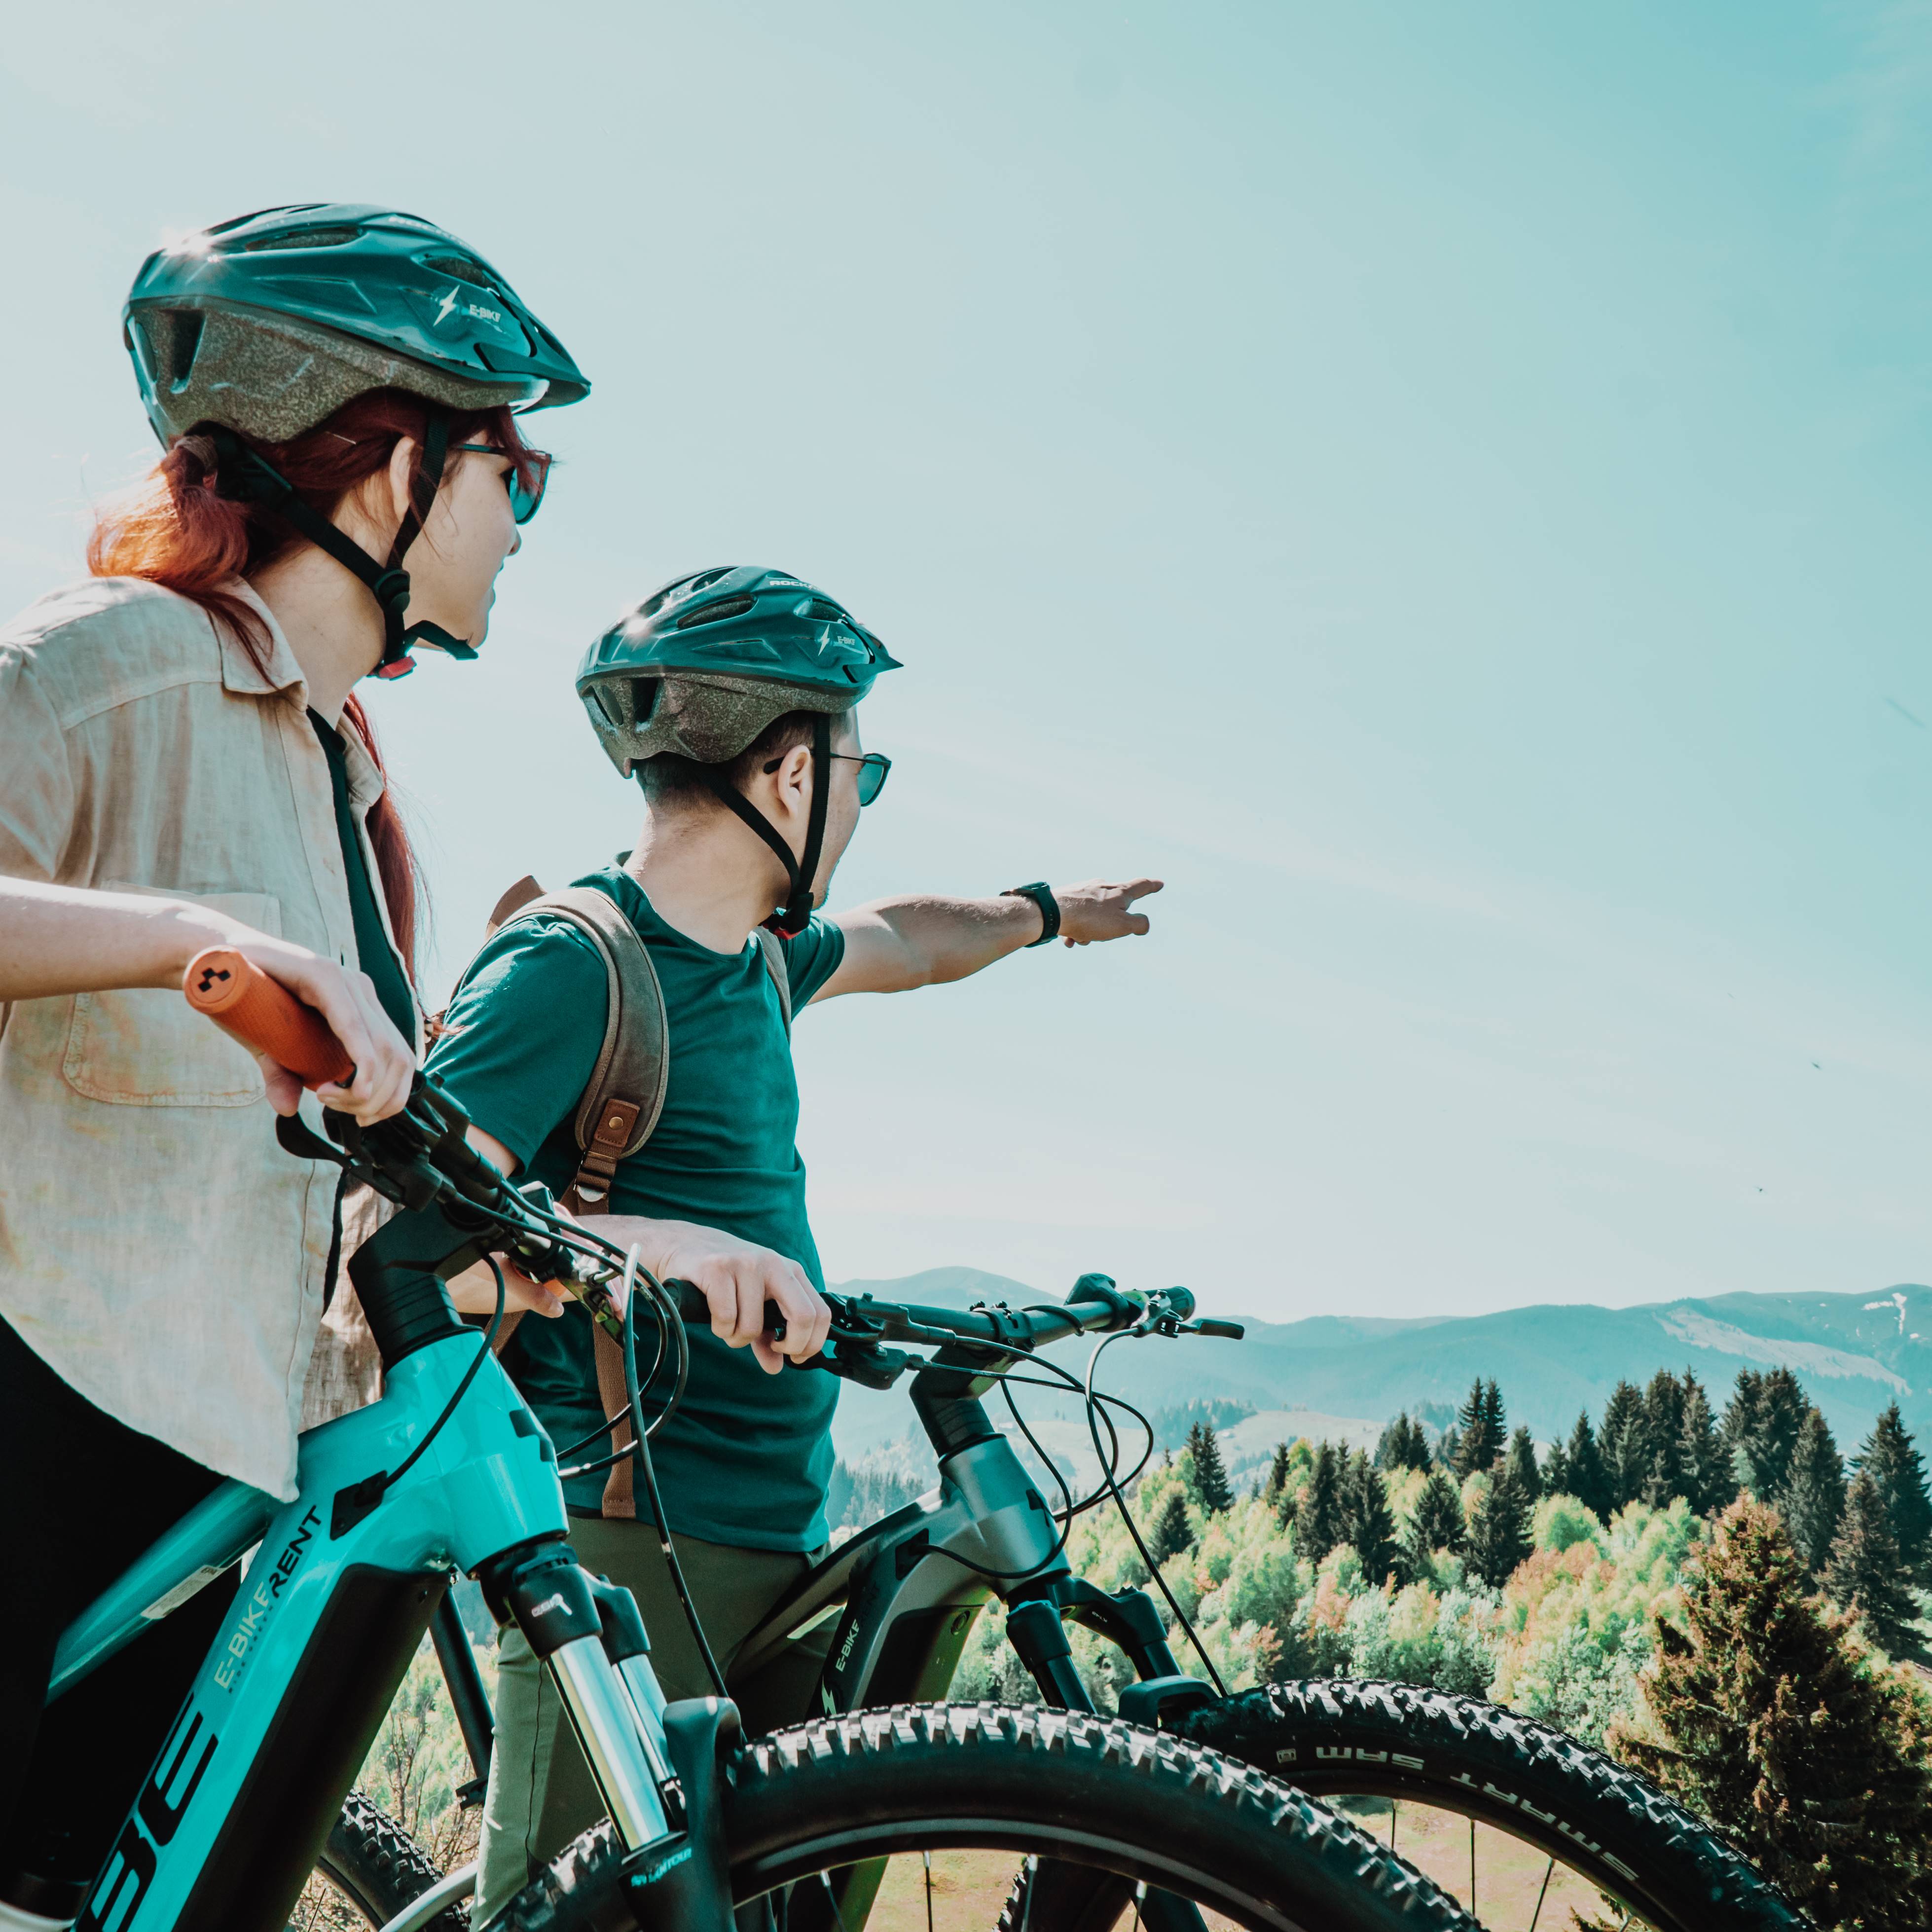 Timp Liber - Tur autoghidat cu bicicleta electrica mountain bike | Pachet Family, smartexperience.ro